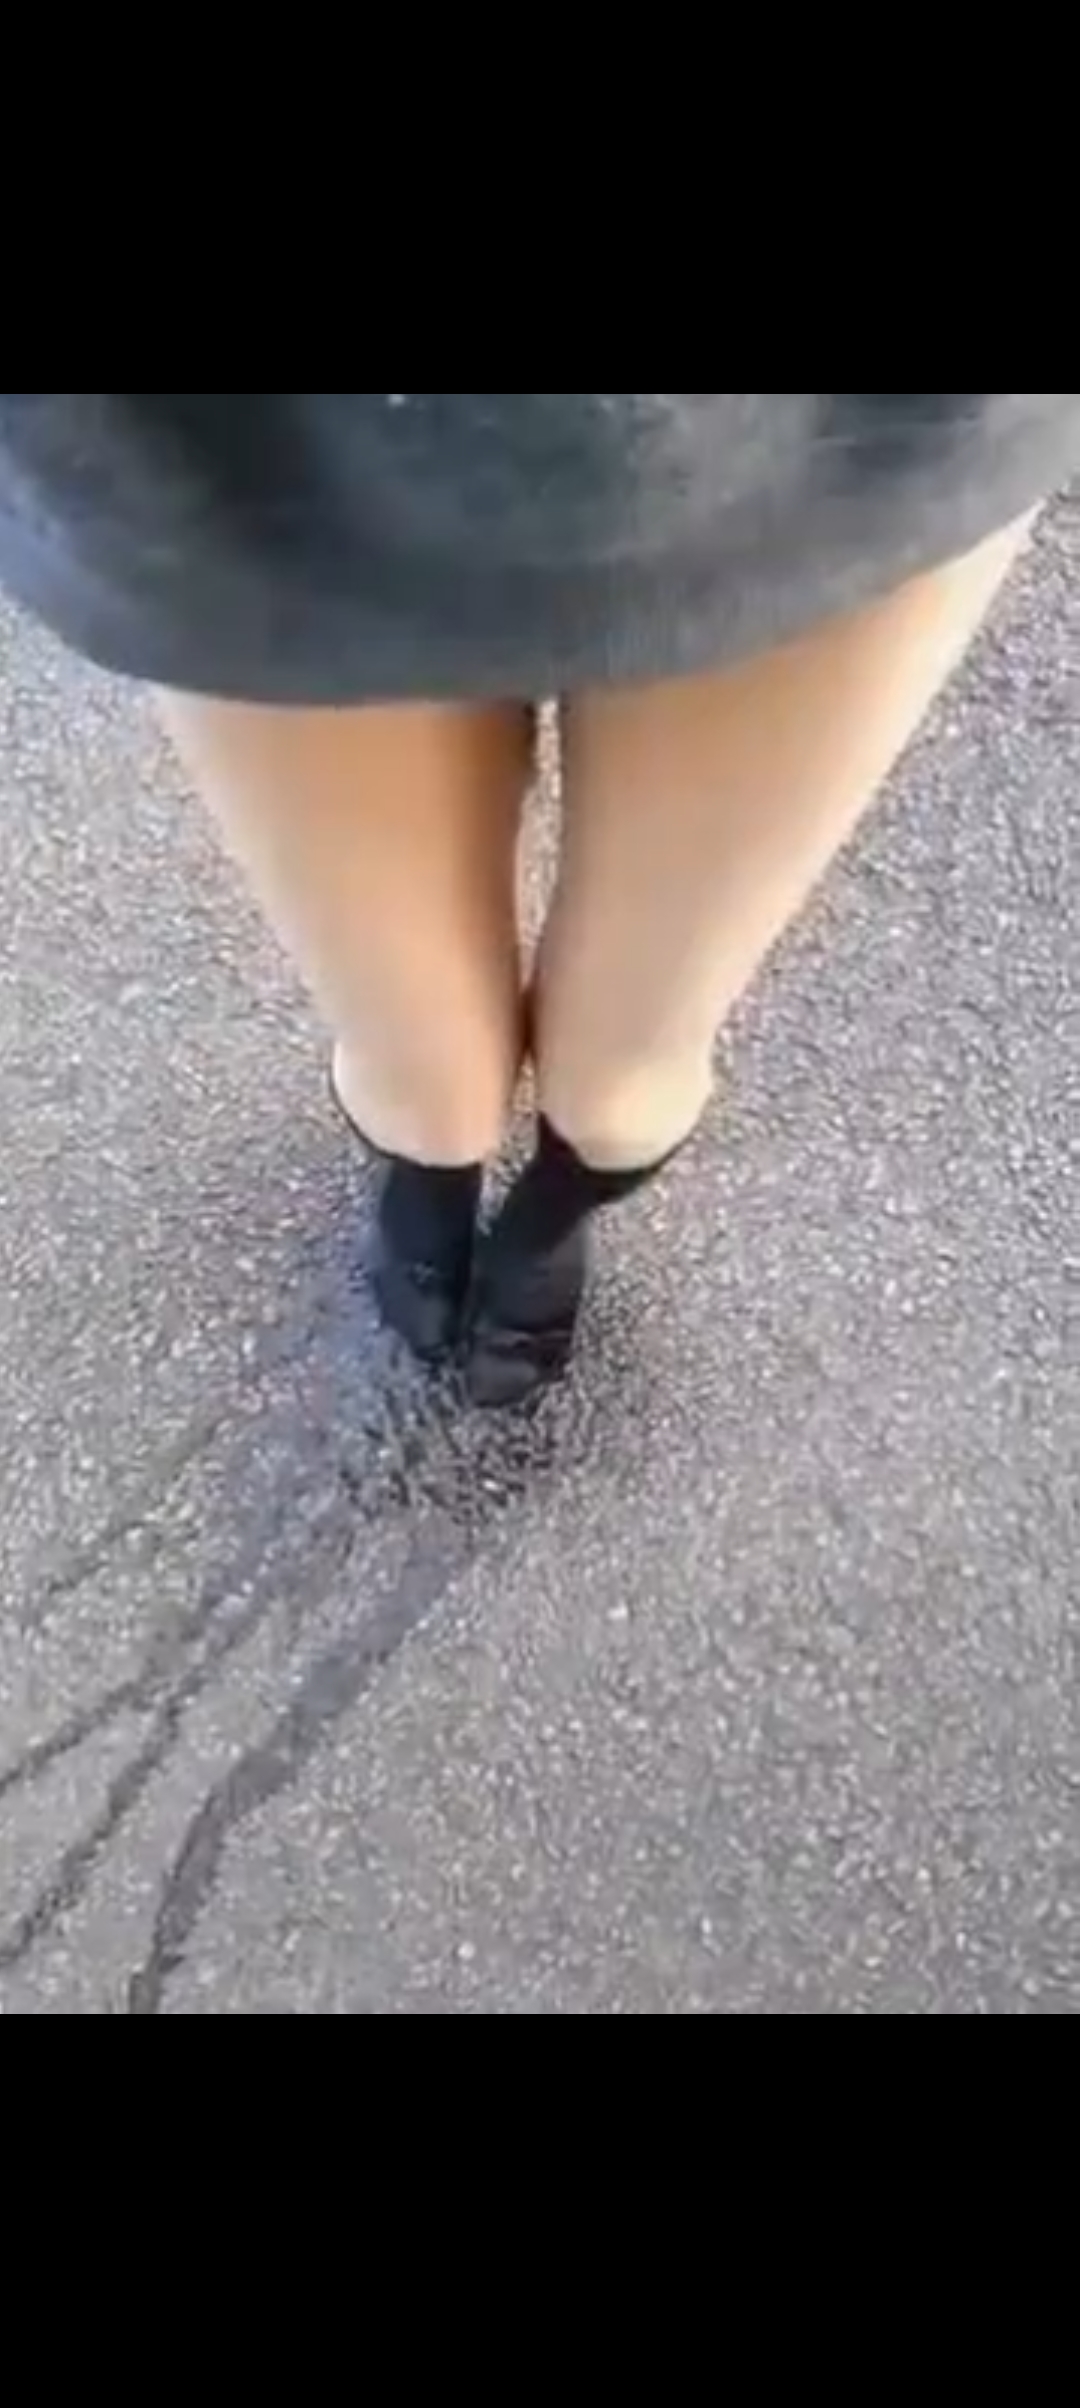 Peed down her legs